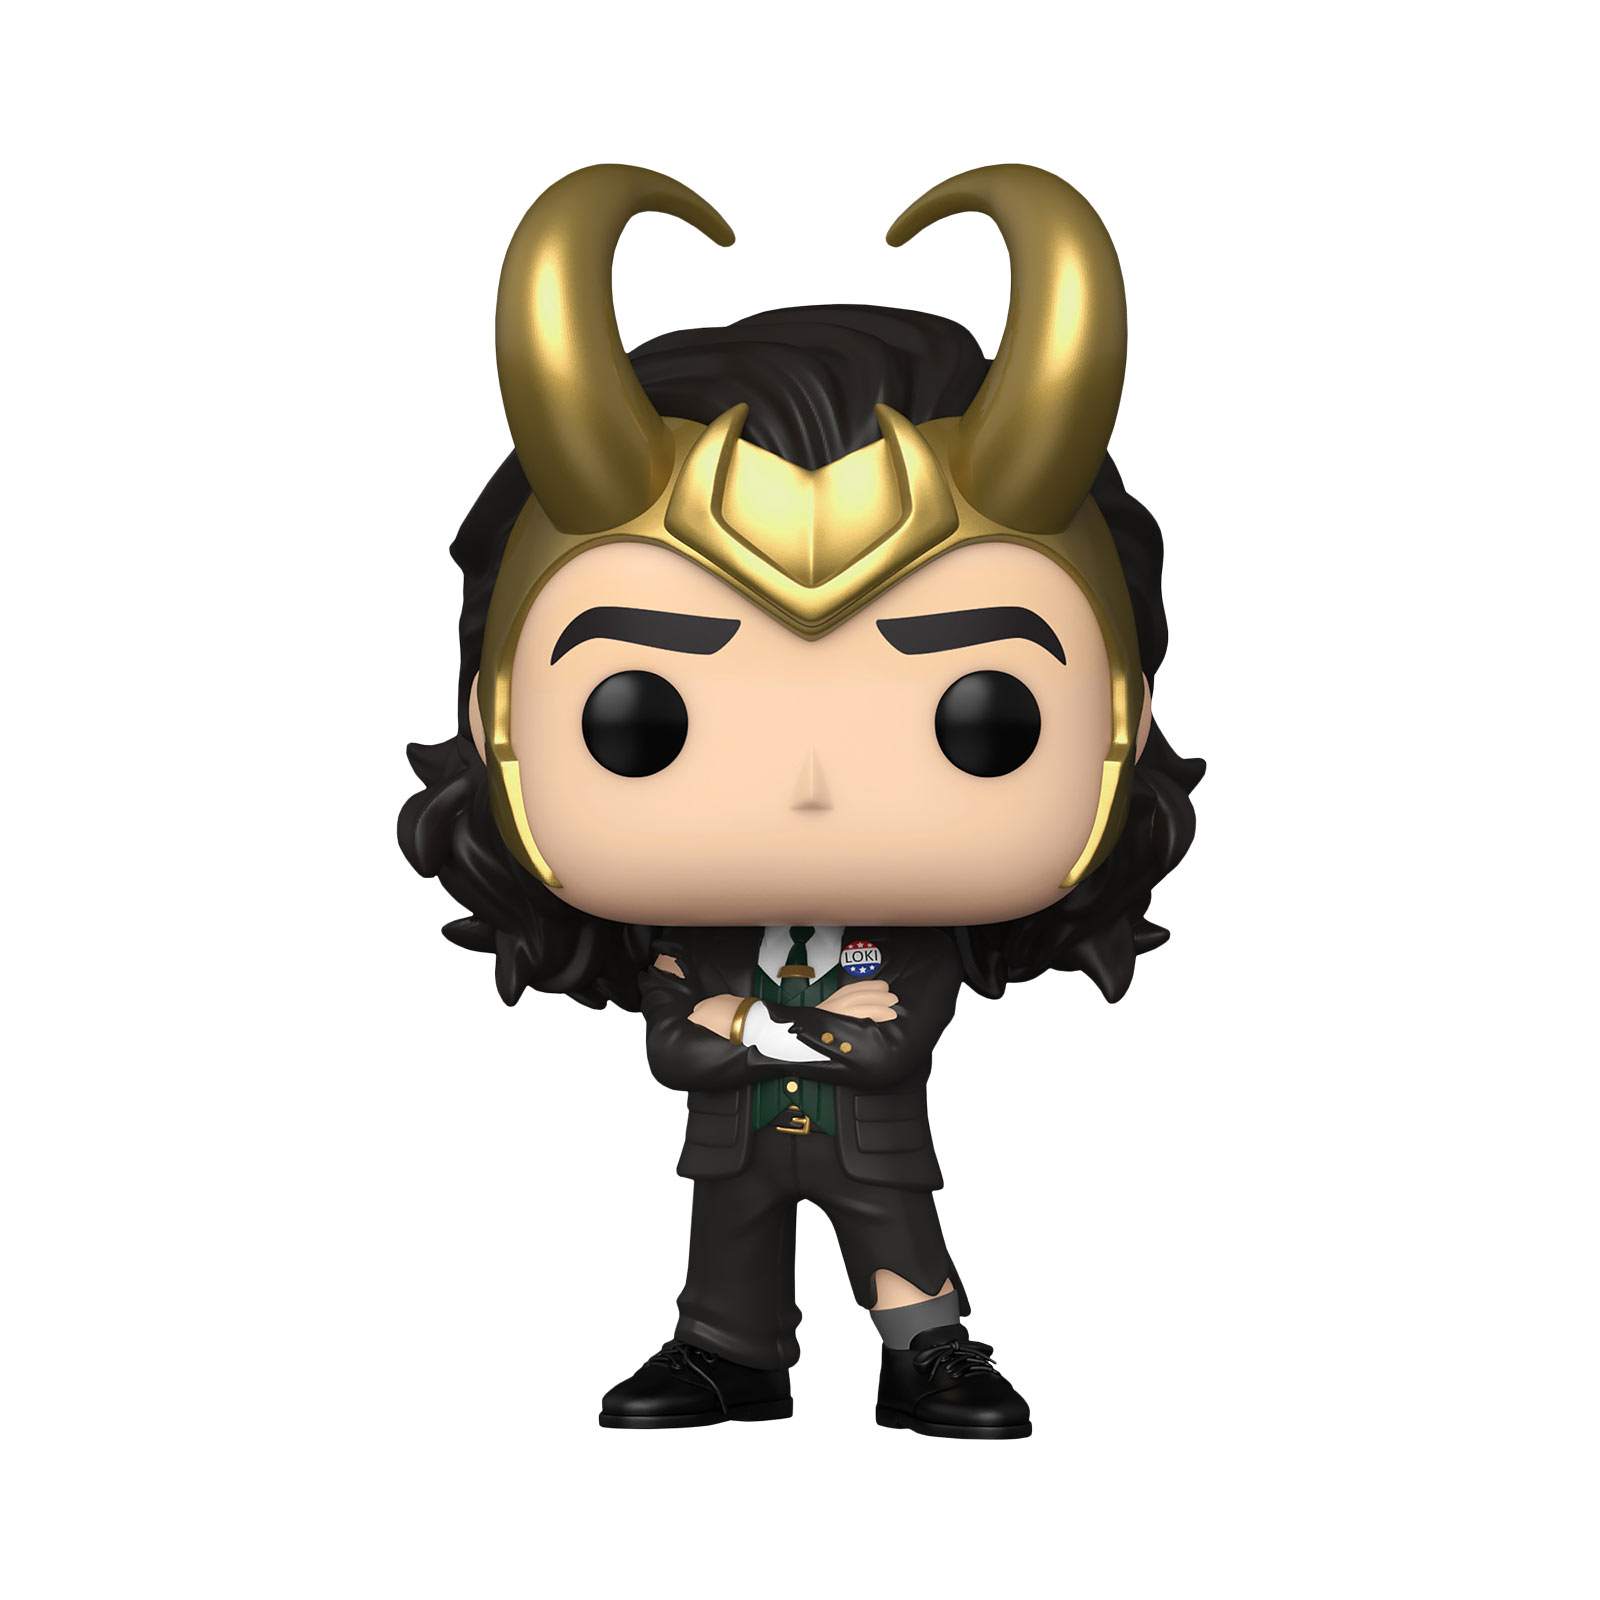 Marvel - President Loki Funko Pop Figure